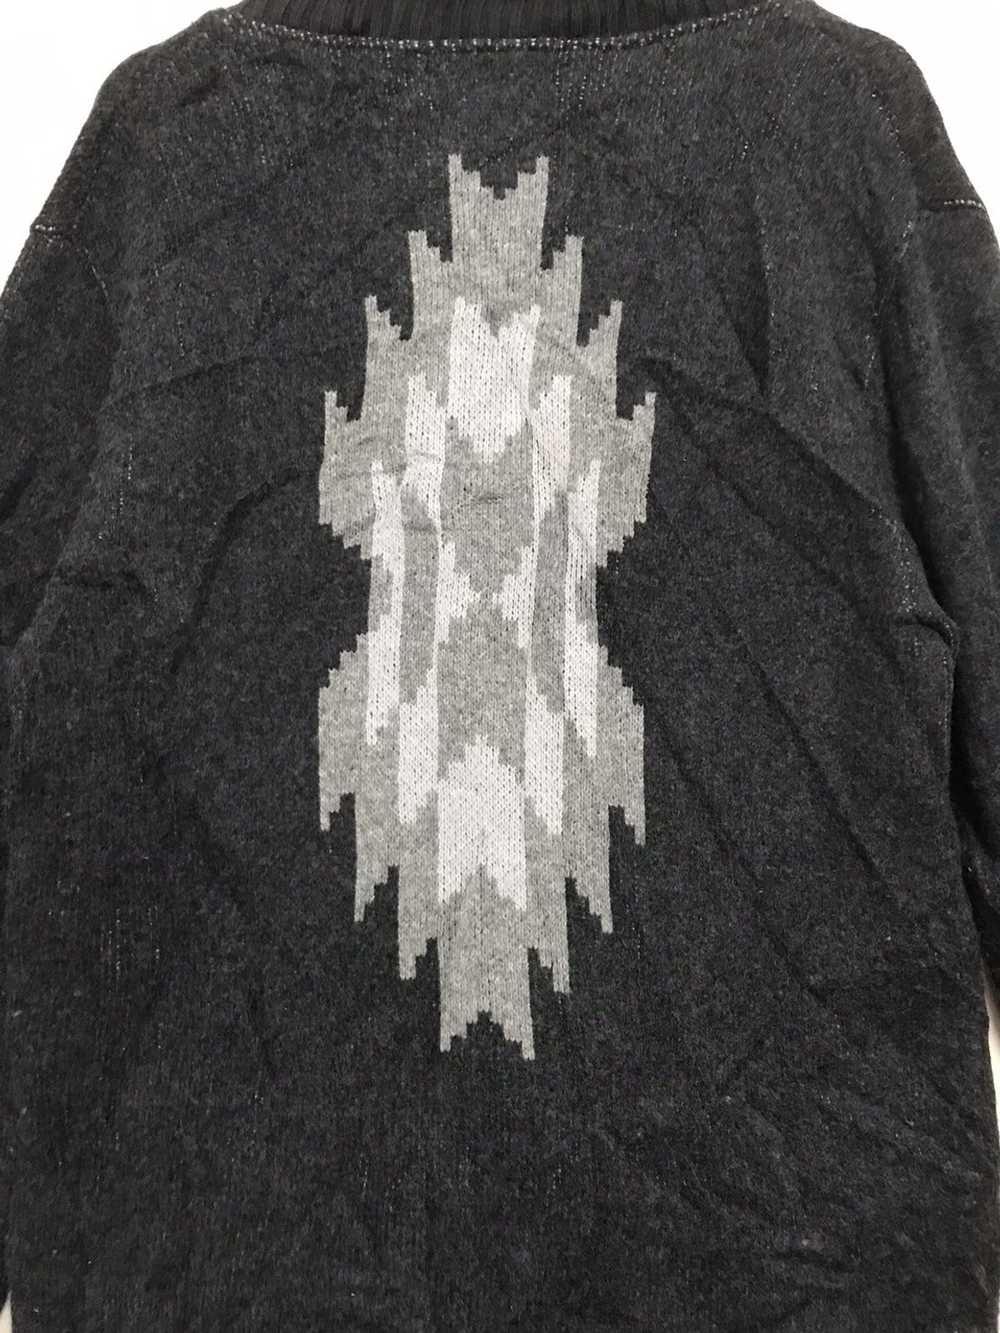 Japanese Brand Unisex Cardigan Sweater Native Chi… - image 7